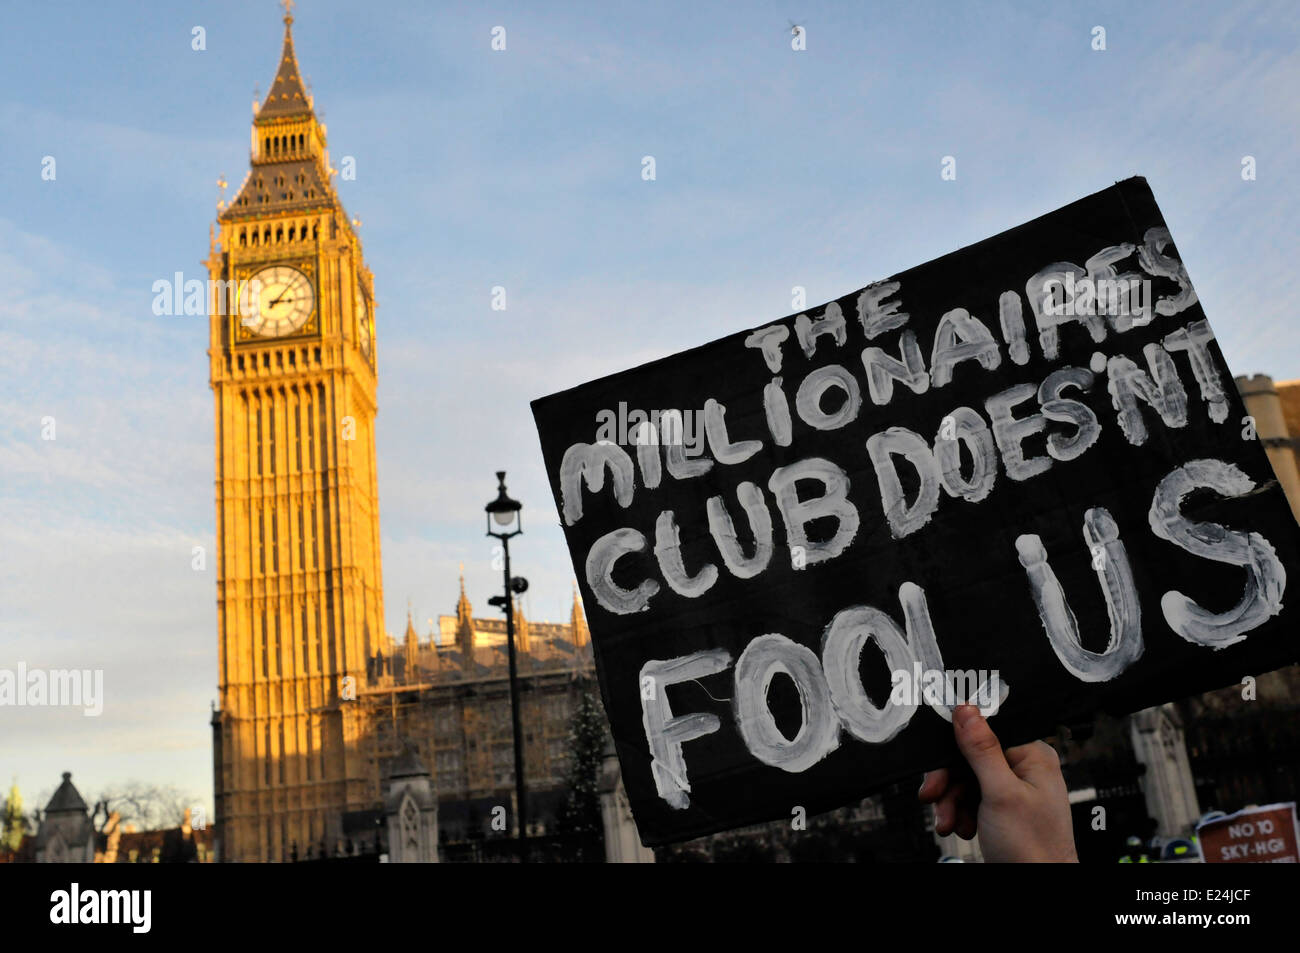 Ein Student hält ein Plakat vor dem Parlament lesen "Millionaires Club uns nicht täuschen" Stockfoto